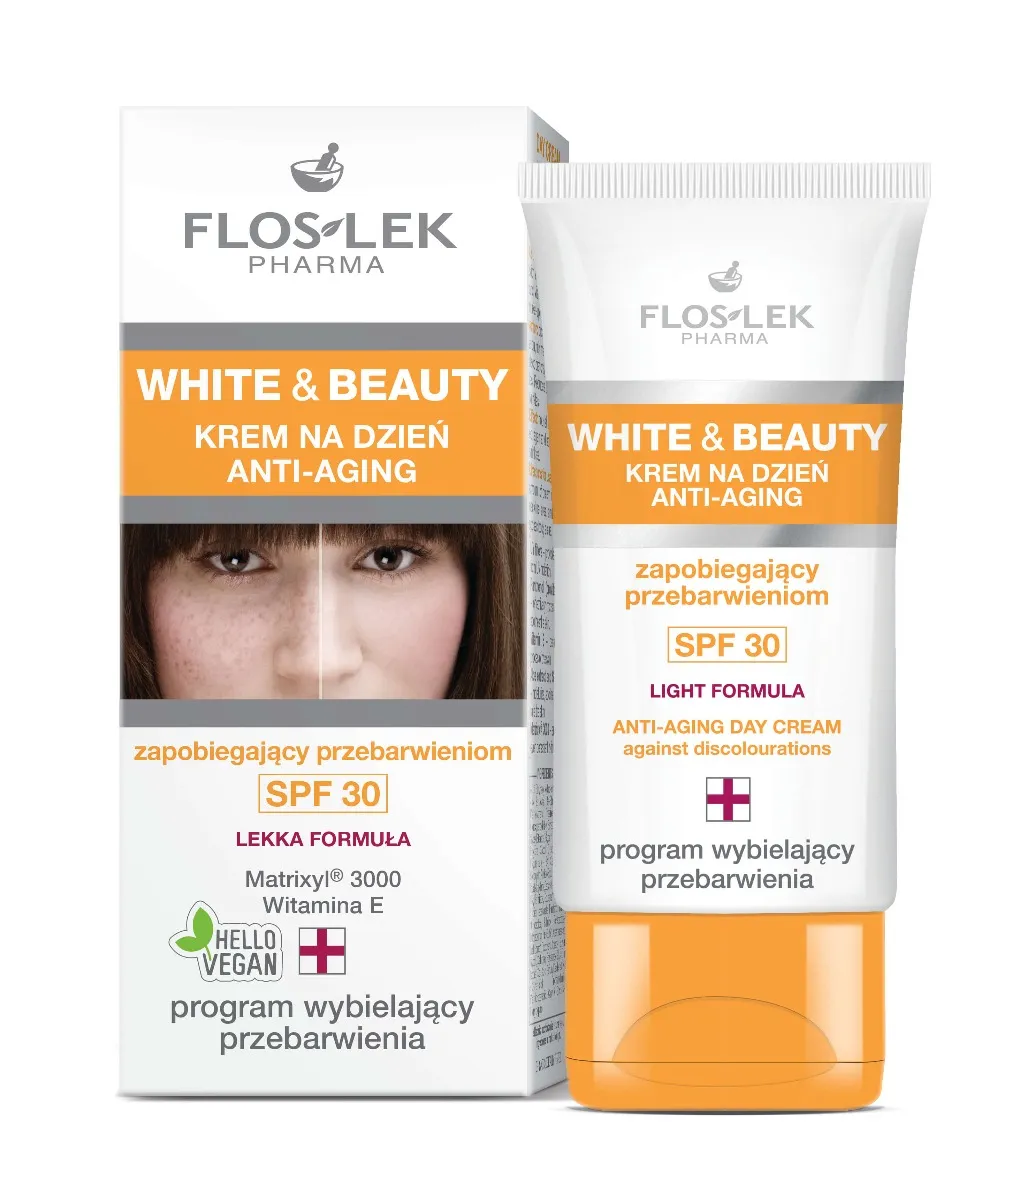 Floslek White and Beauty, krem anti-aging na dzień zapobiegający przebarwieniom, SPF 30, 30 ml